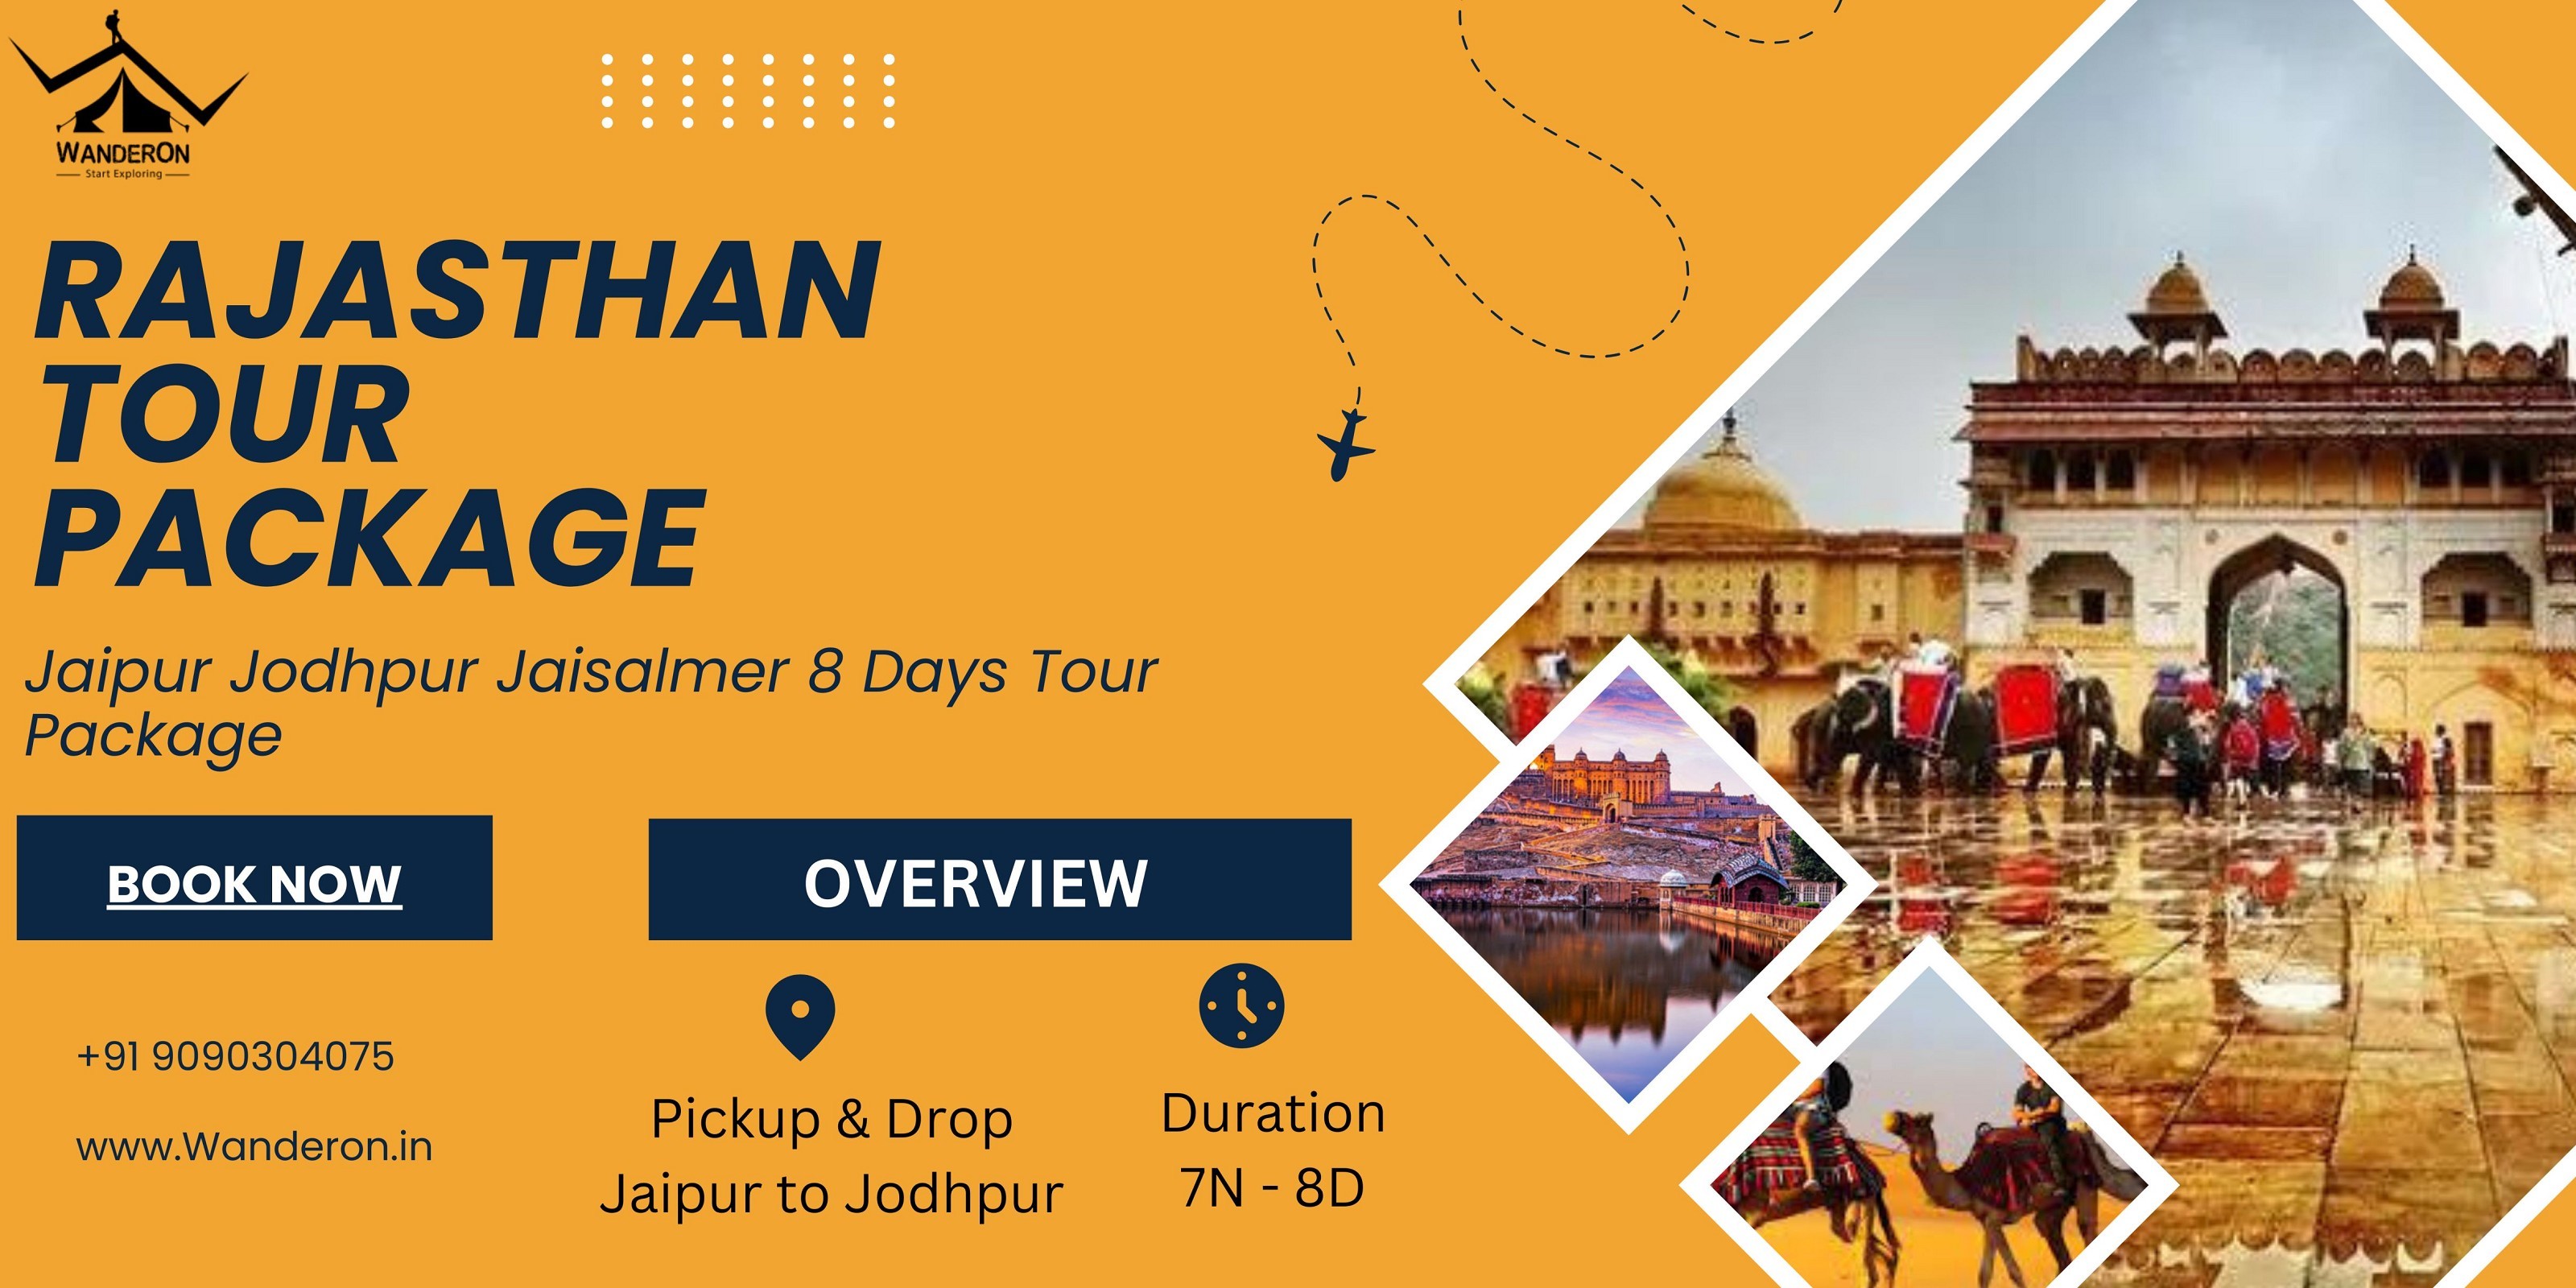 Jaipur Jodhpur Jaisalmer: 8-Day Rajasthan Tour with Wander On!